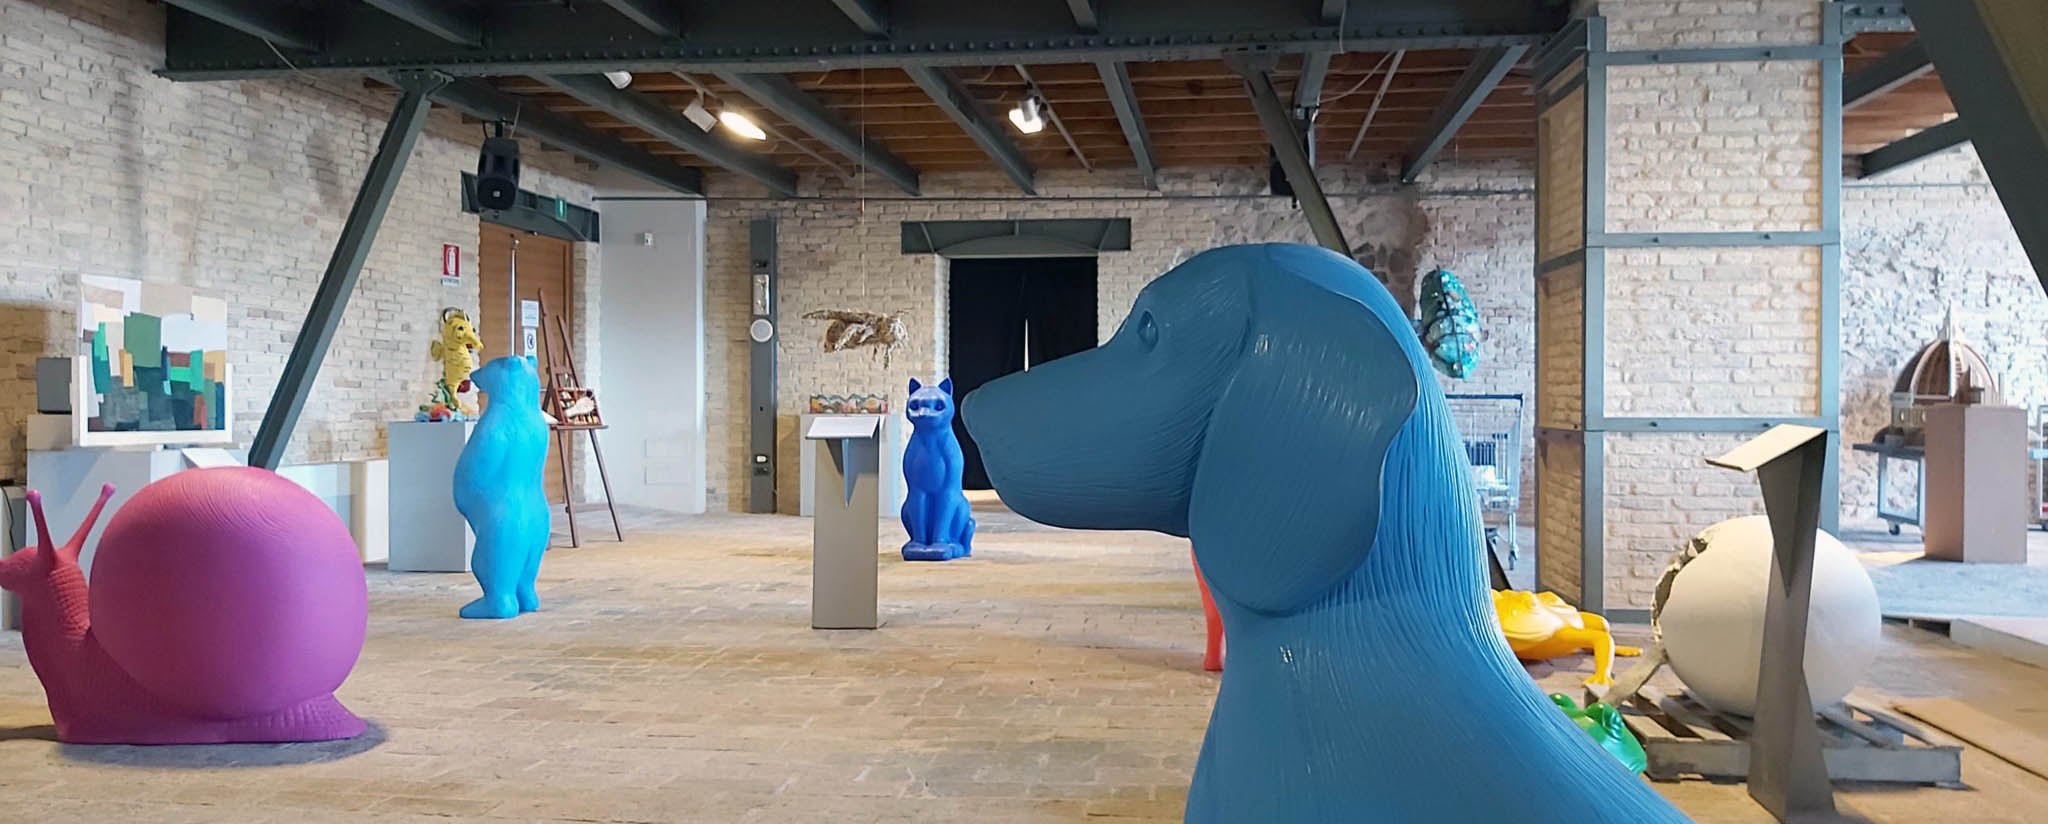 panoramica sala mostra con cane azzurro in plastica